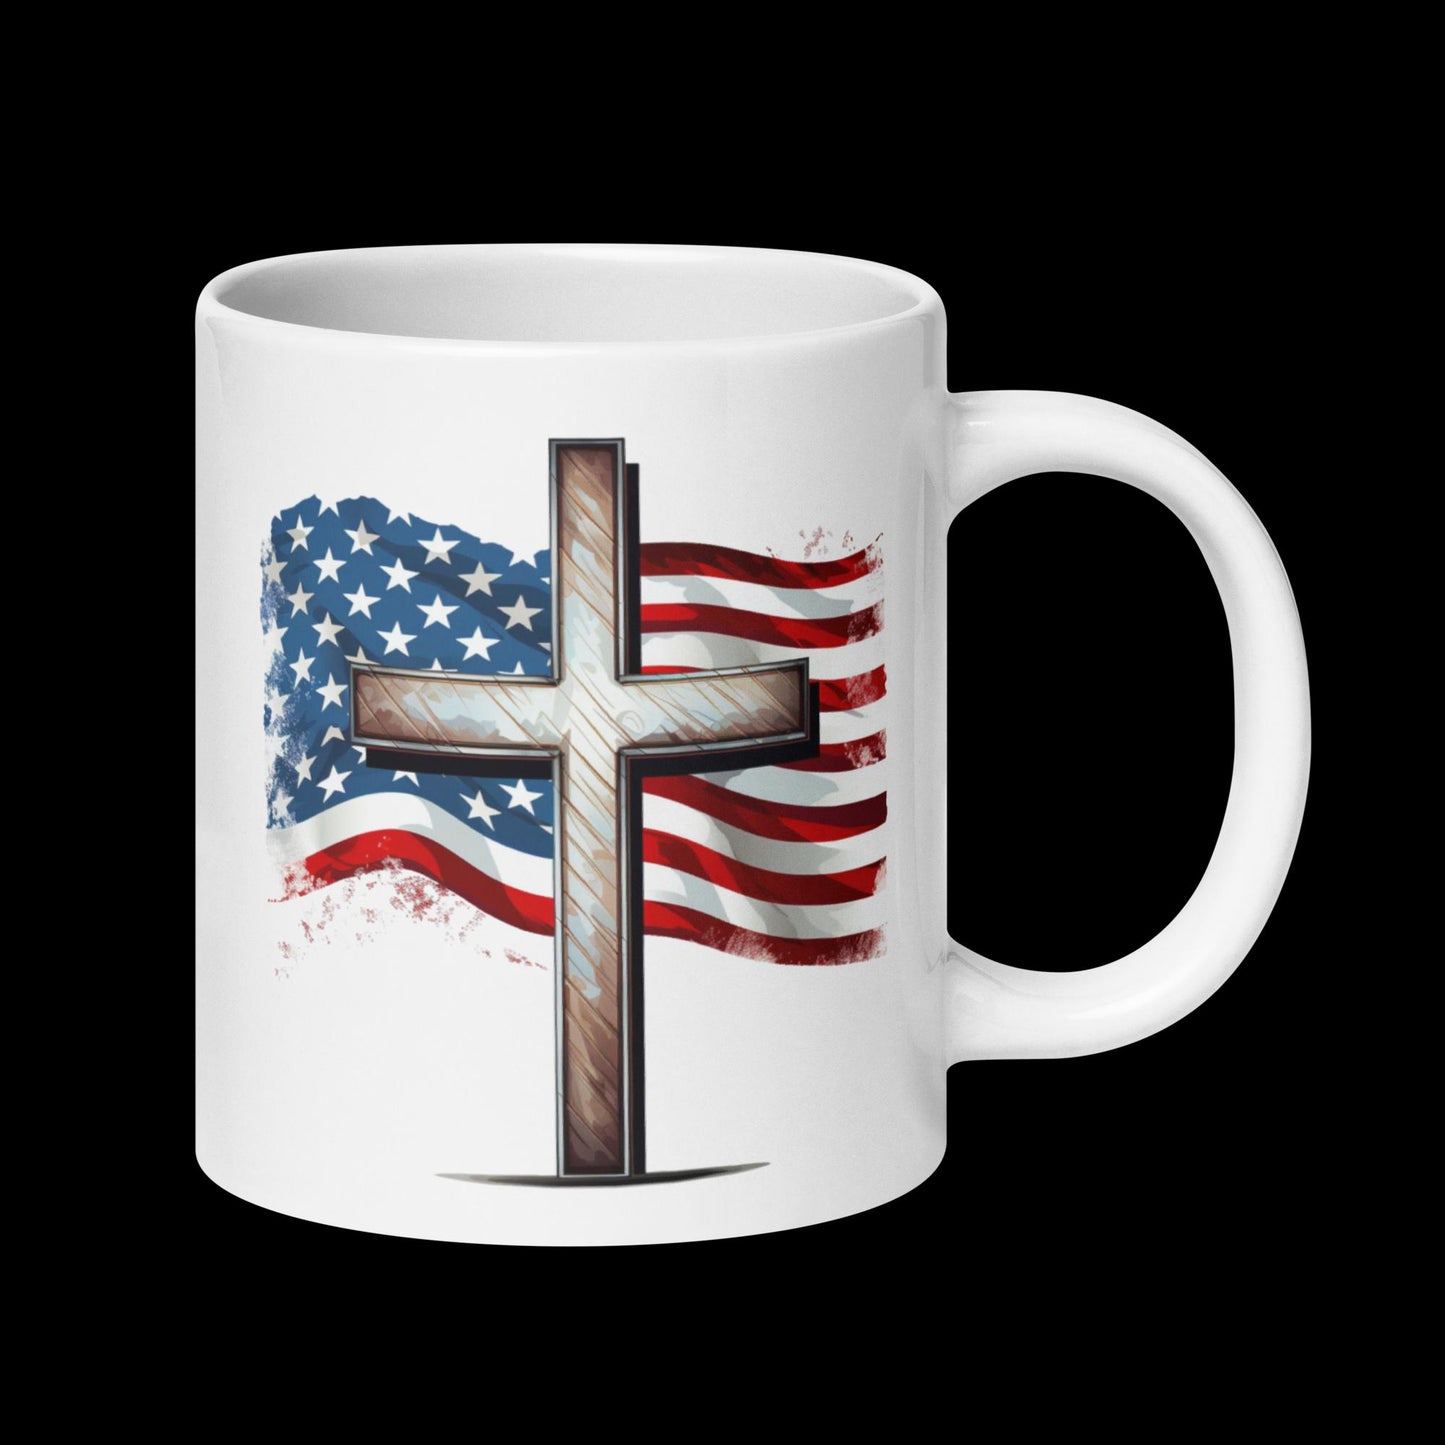 Cross & American Flag Mug | Christian Mug  | Easter Gift  | 4th of July | Patriotic USA | Western Cross Mug Design